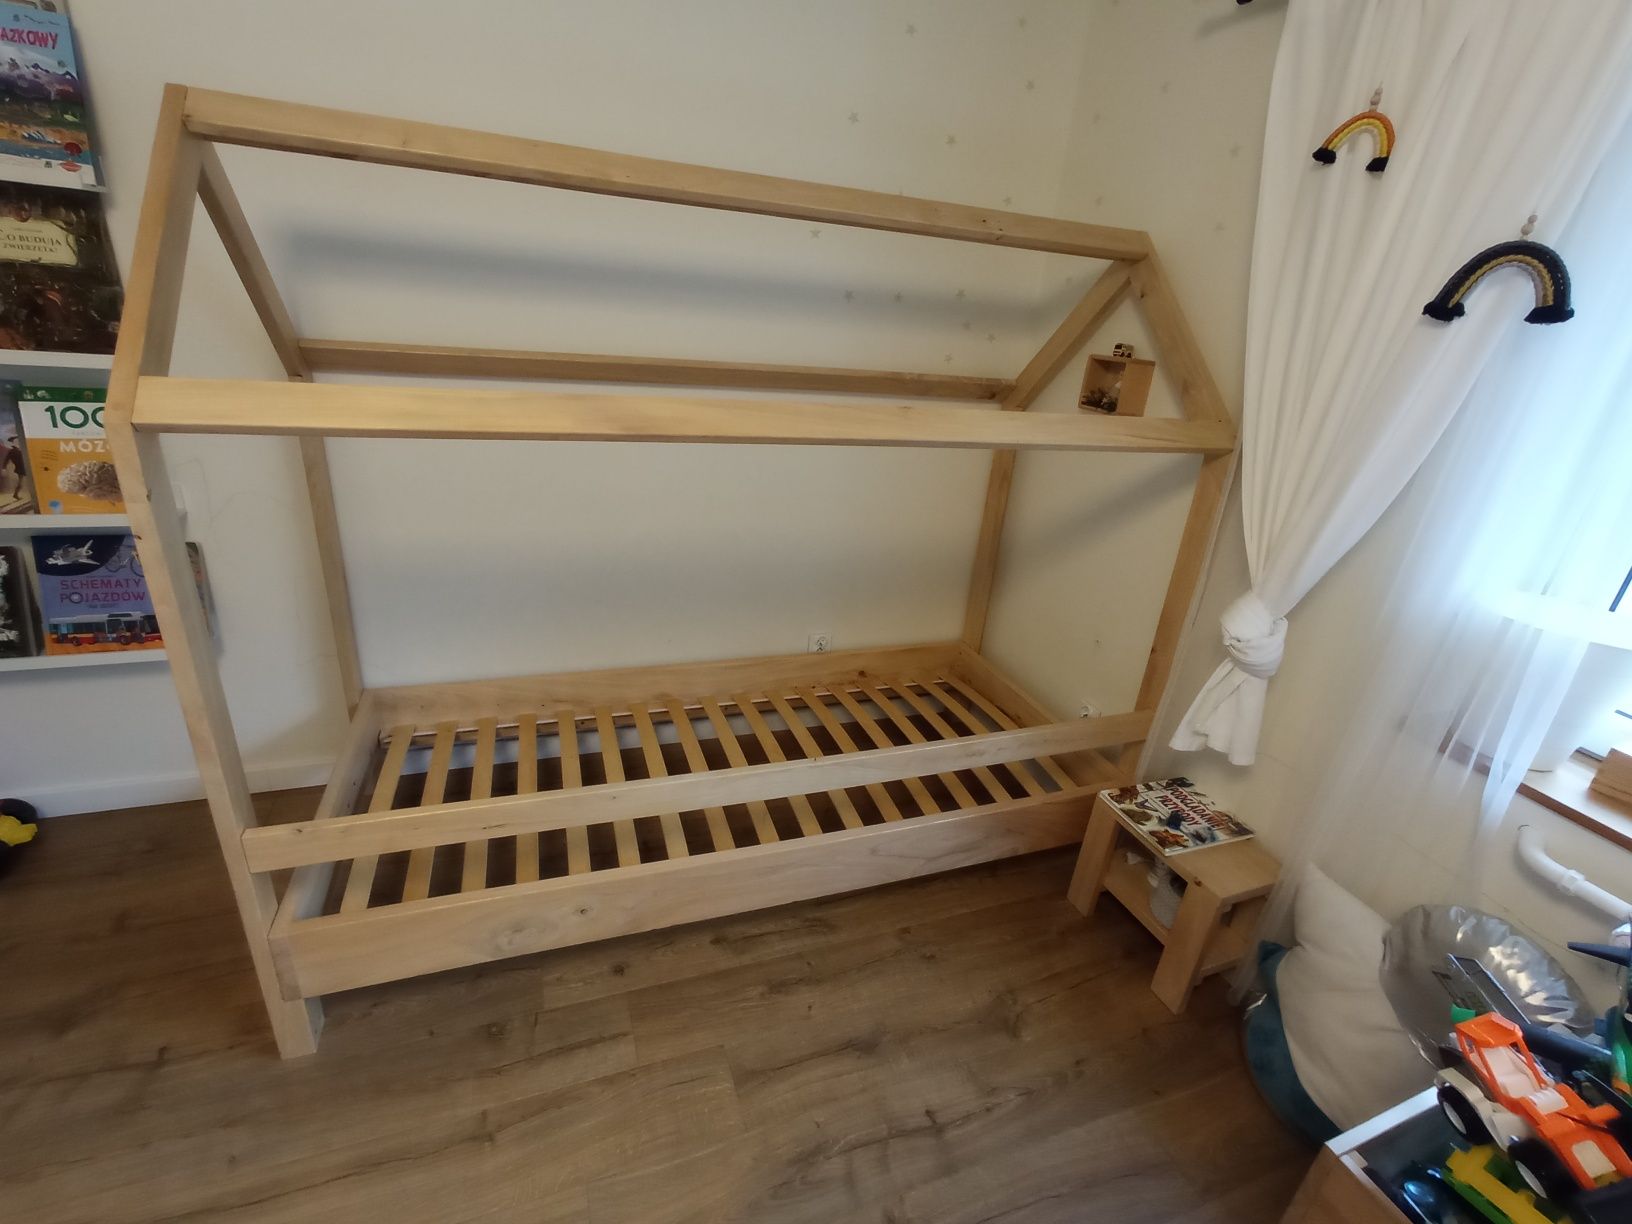 Łóżko domek, tipi, handmade, drewniane, 90x200